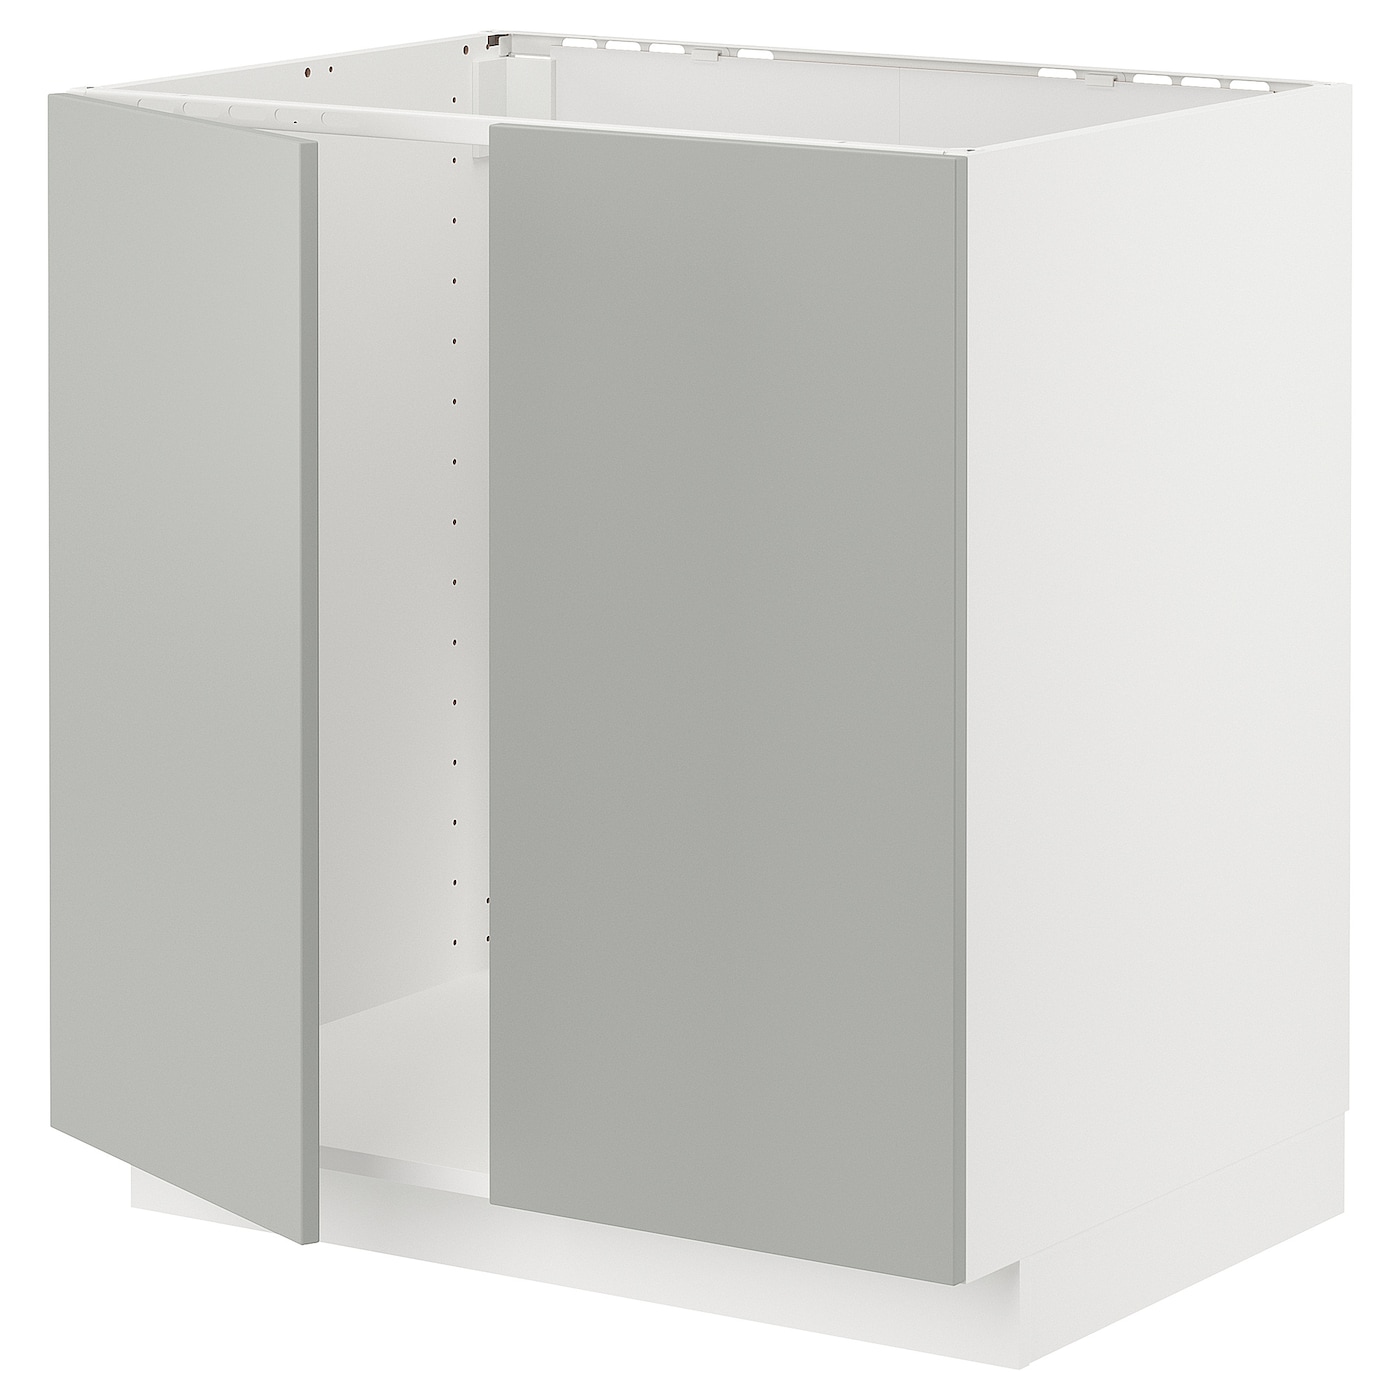 Шкаф - METOD IKEA/ МЕТОД ИКЕА,  88х80 см, белый/серый